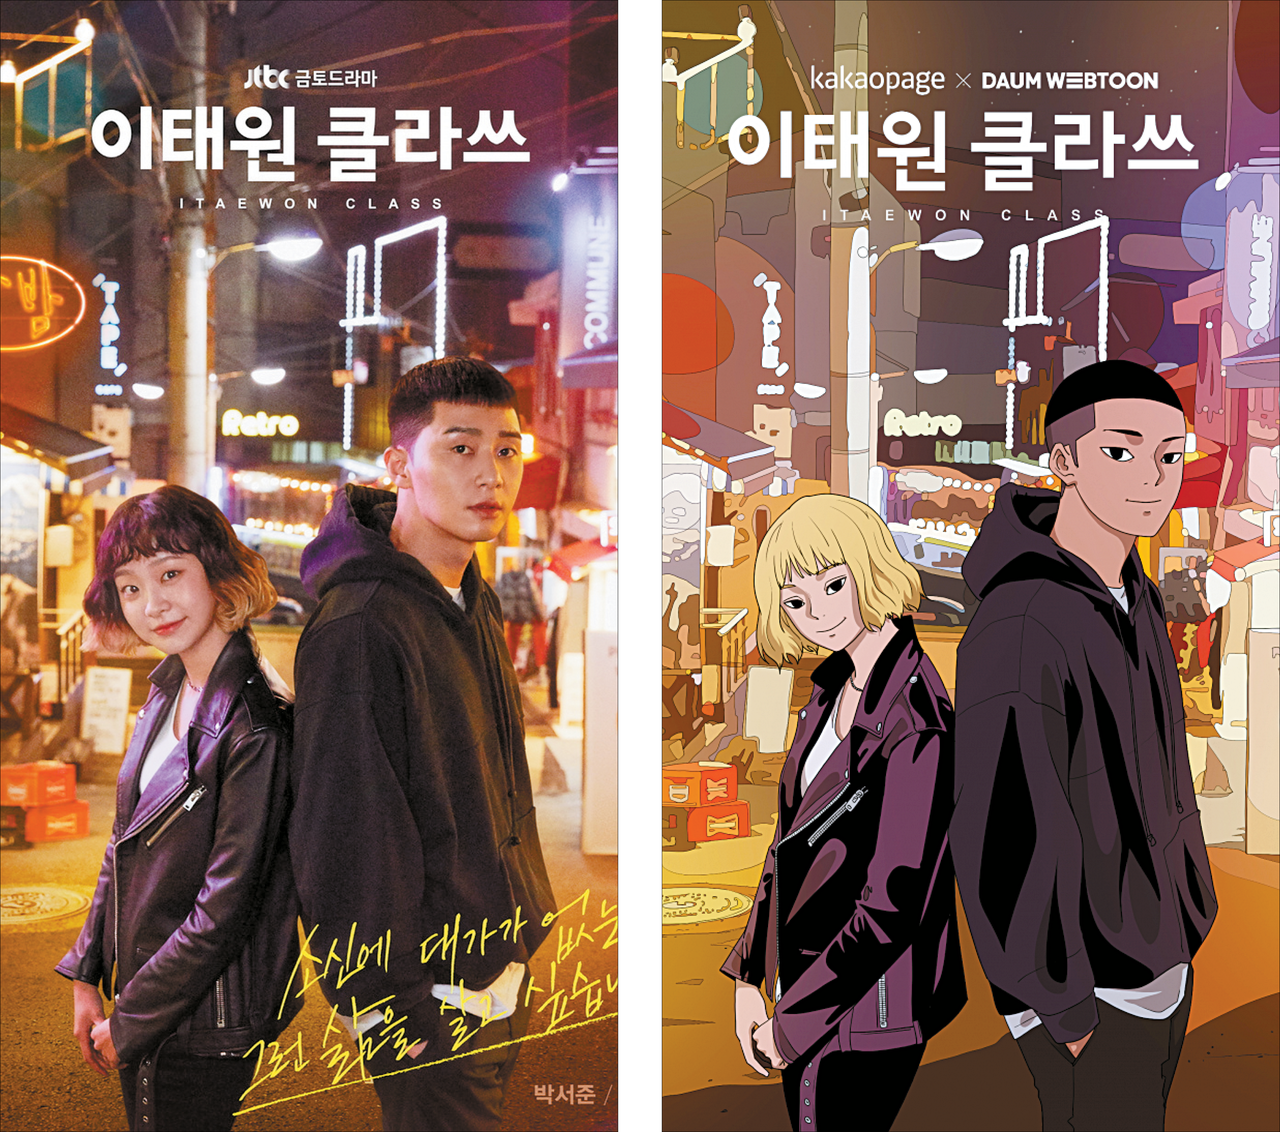 (좌) 드라마 '이태원 클라쓰'의 메인 포스터. (우) 웹툰 형식으로 표현된 특별 포스터.